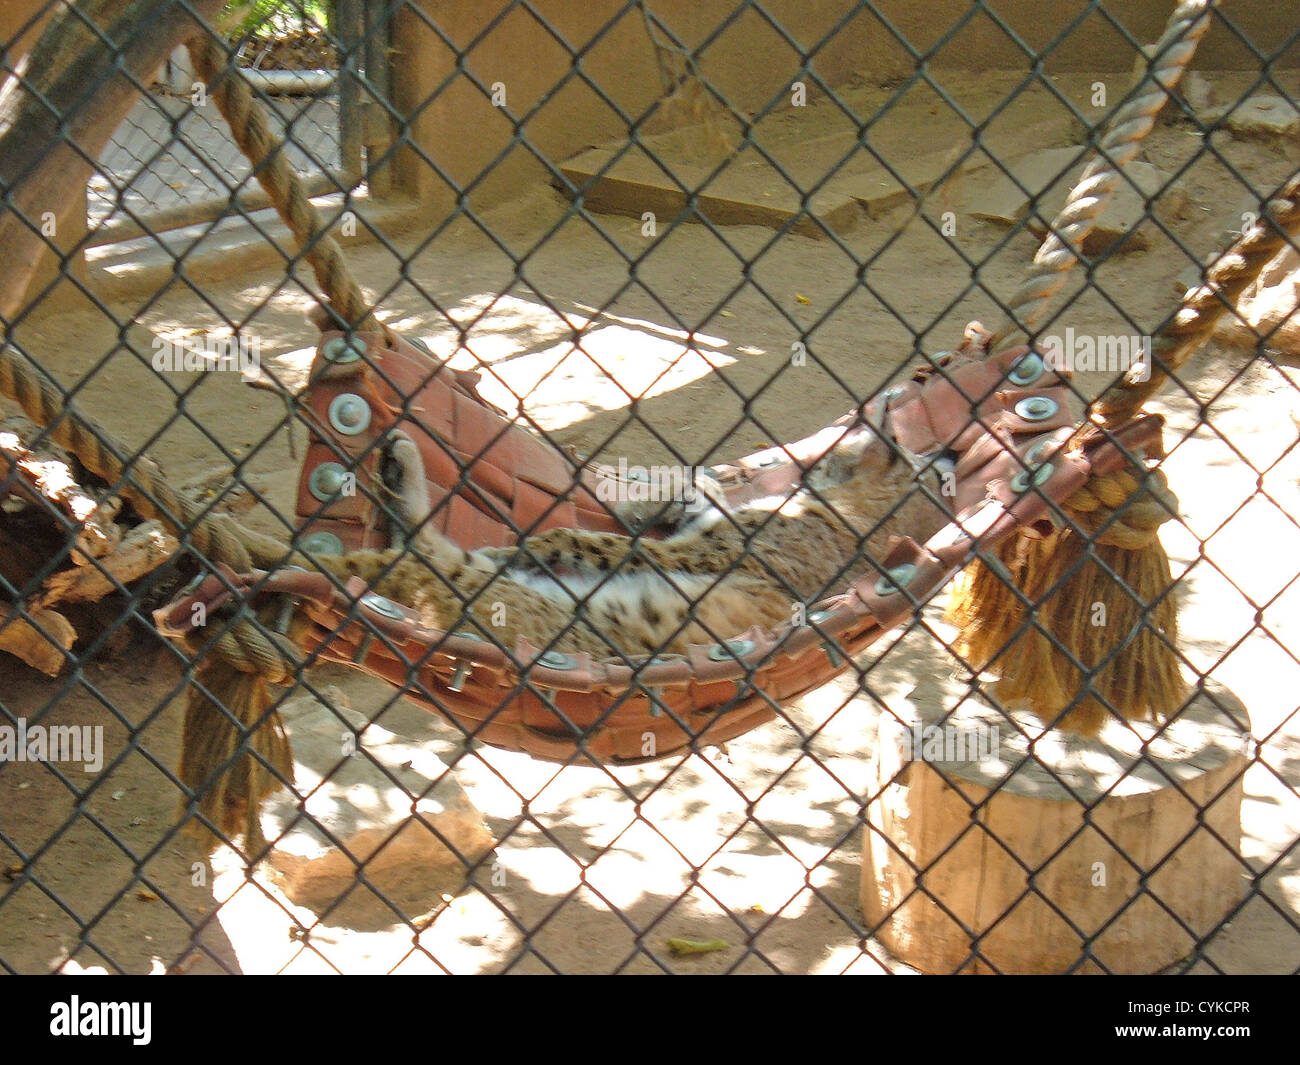 Bobcat asleep in a hammock at the Rio Grande Zoo in Albuquerque, New Mexico Stock Photo